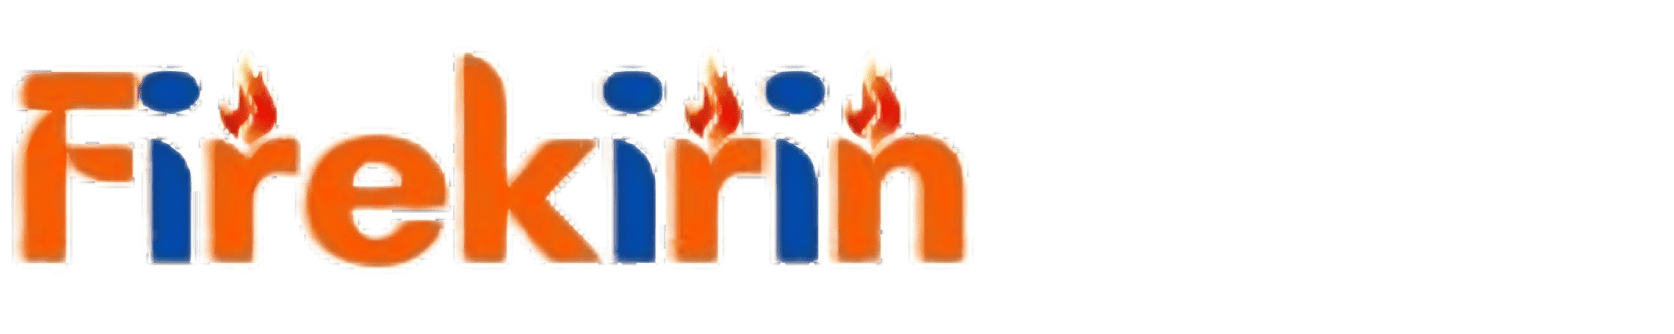 Download Fire Kirin Xyz